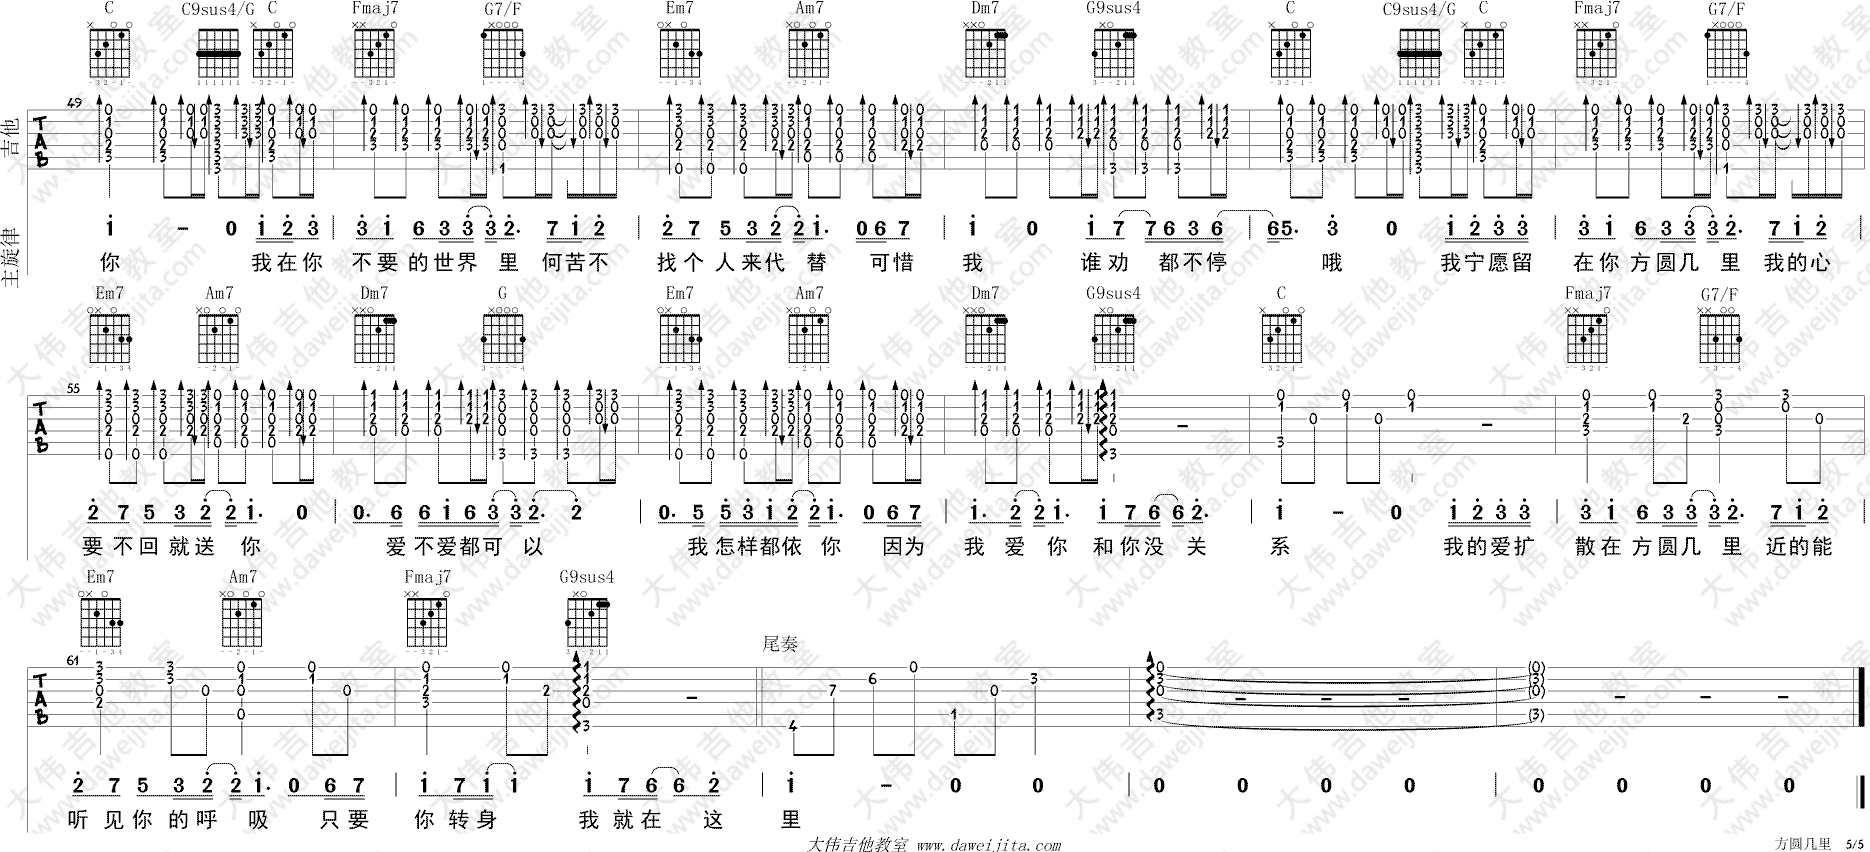 薛之谦《方圆几里》吉他谱(C调)-Guitar Music Score